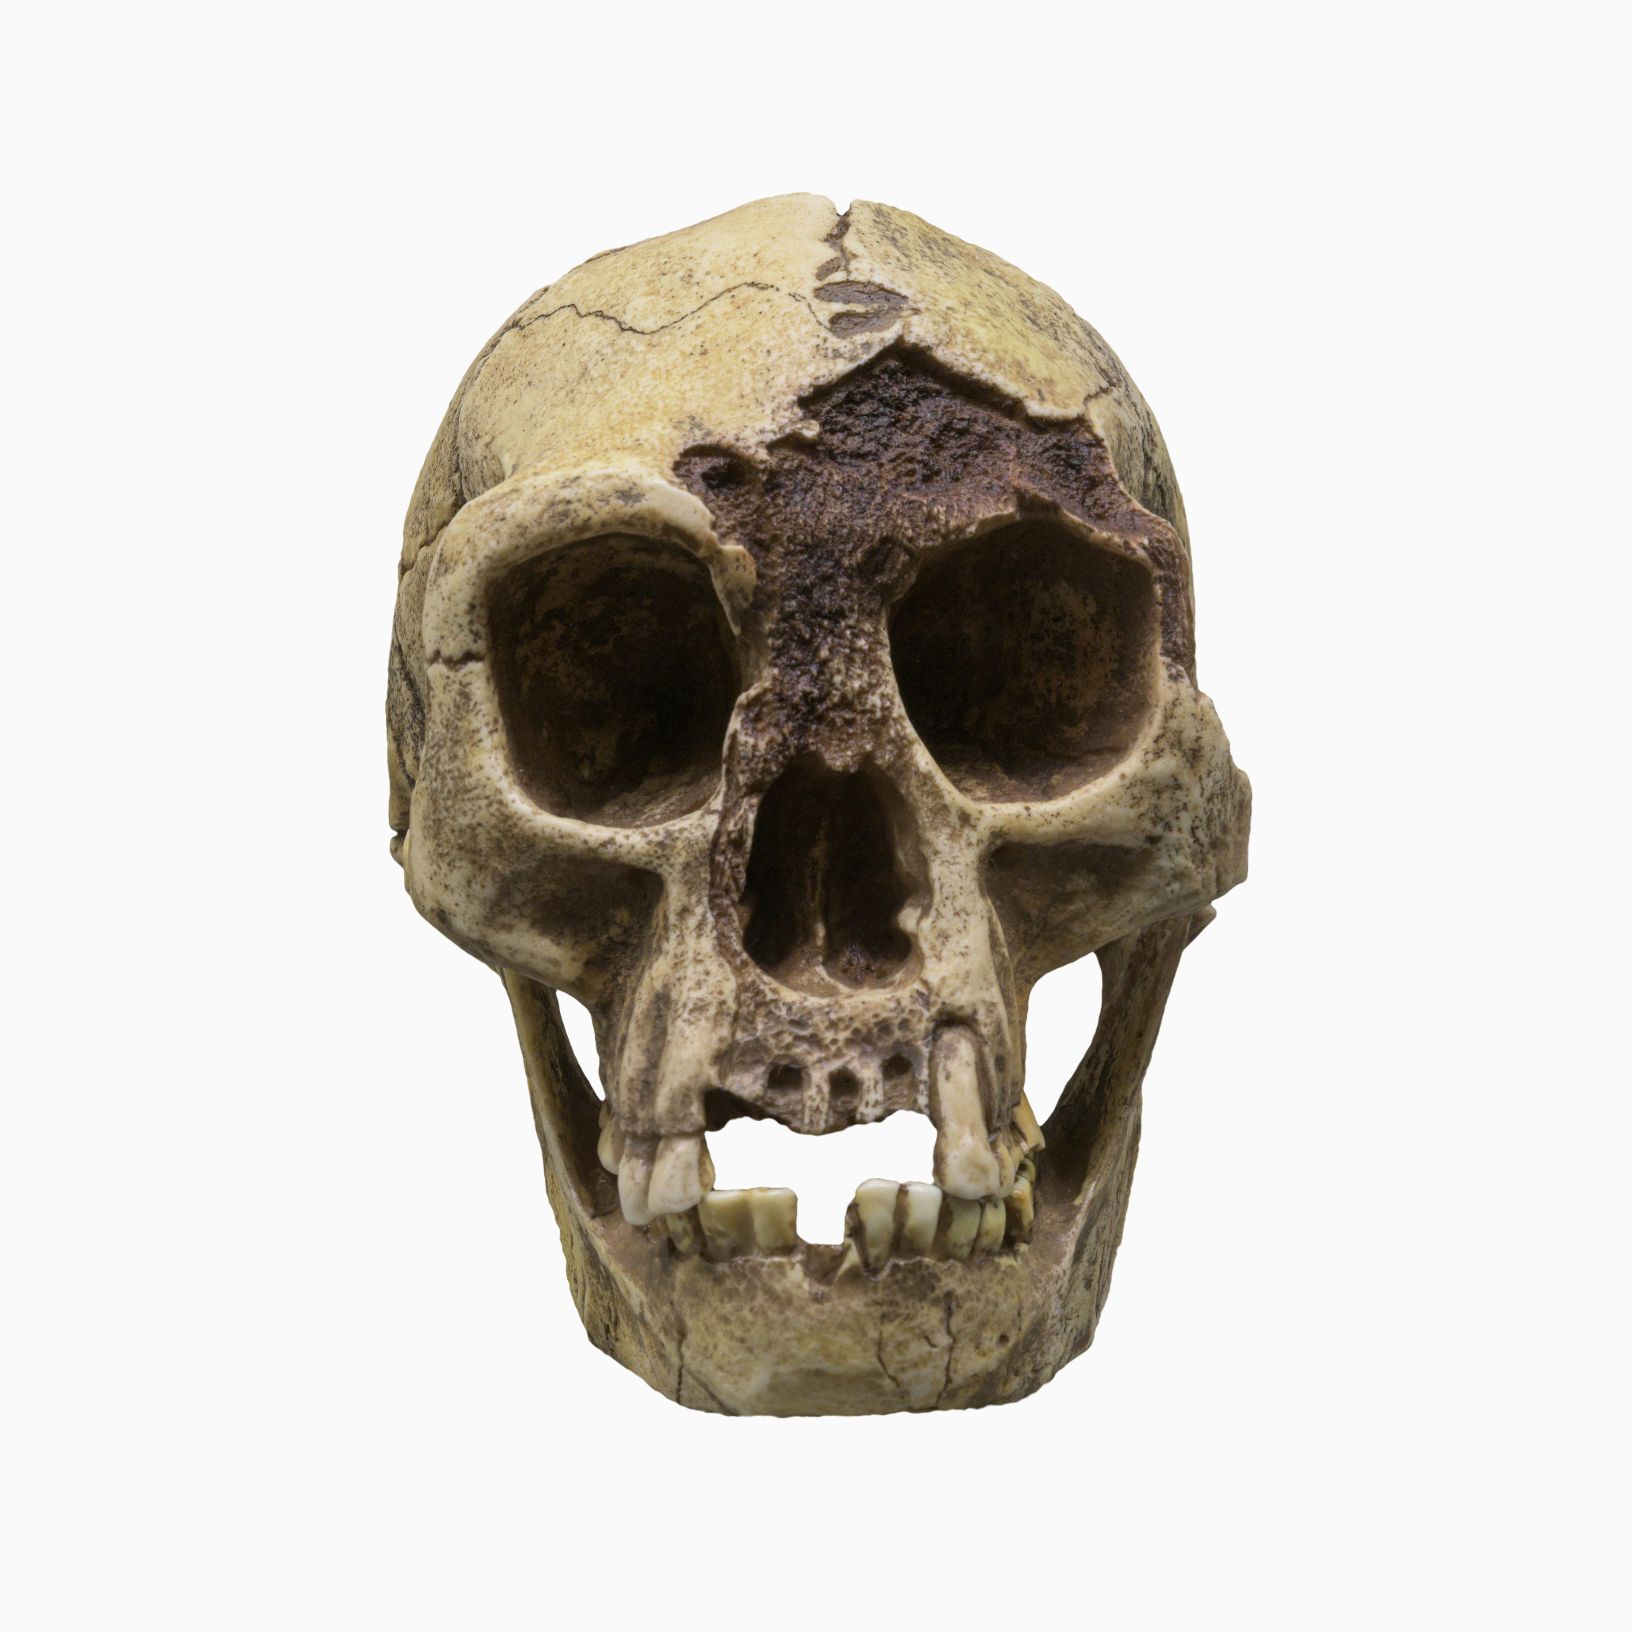 Le crâne de H. floresiensis (Flores Man), surnommé "Hobbit", est une espèce de petit humain archaïque qui habitait l'île de Flores, en Indonésie. © Crédit d'image : Dmitry Moroz | Sous licence de DreamsTime.com (photo de stock à usage éditorial/commercial, ID : 227004112)